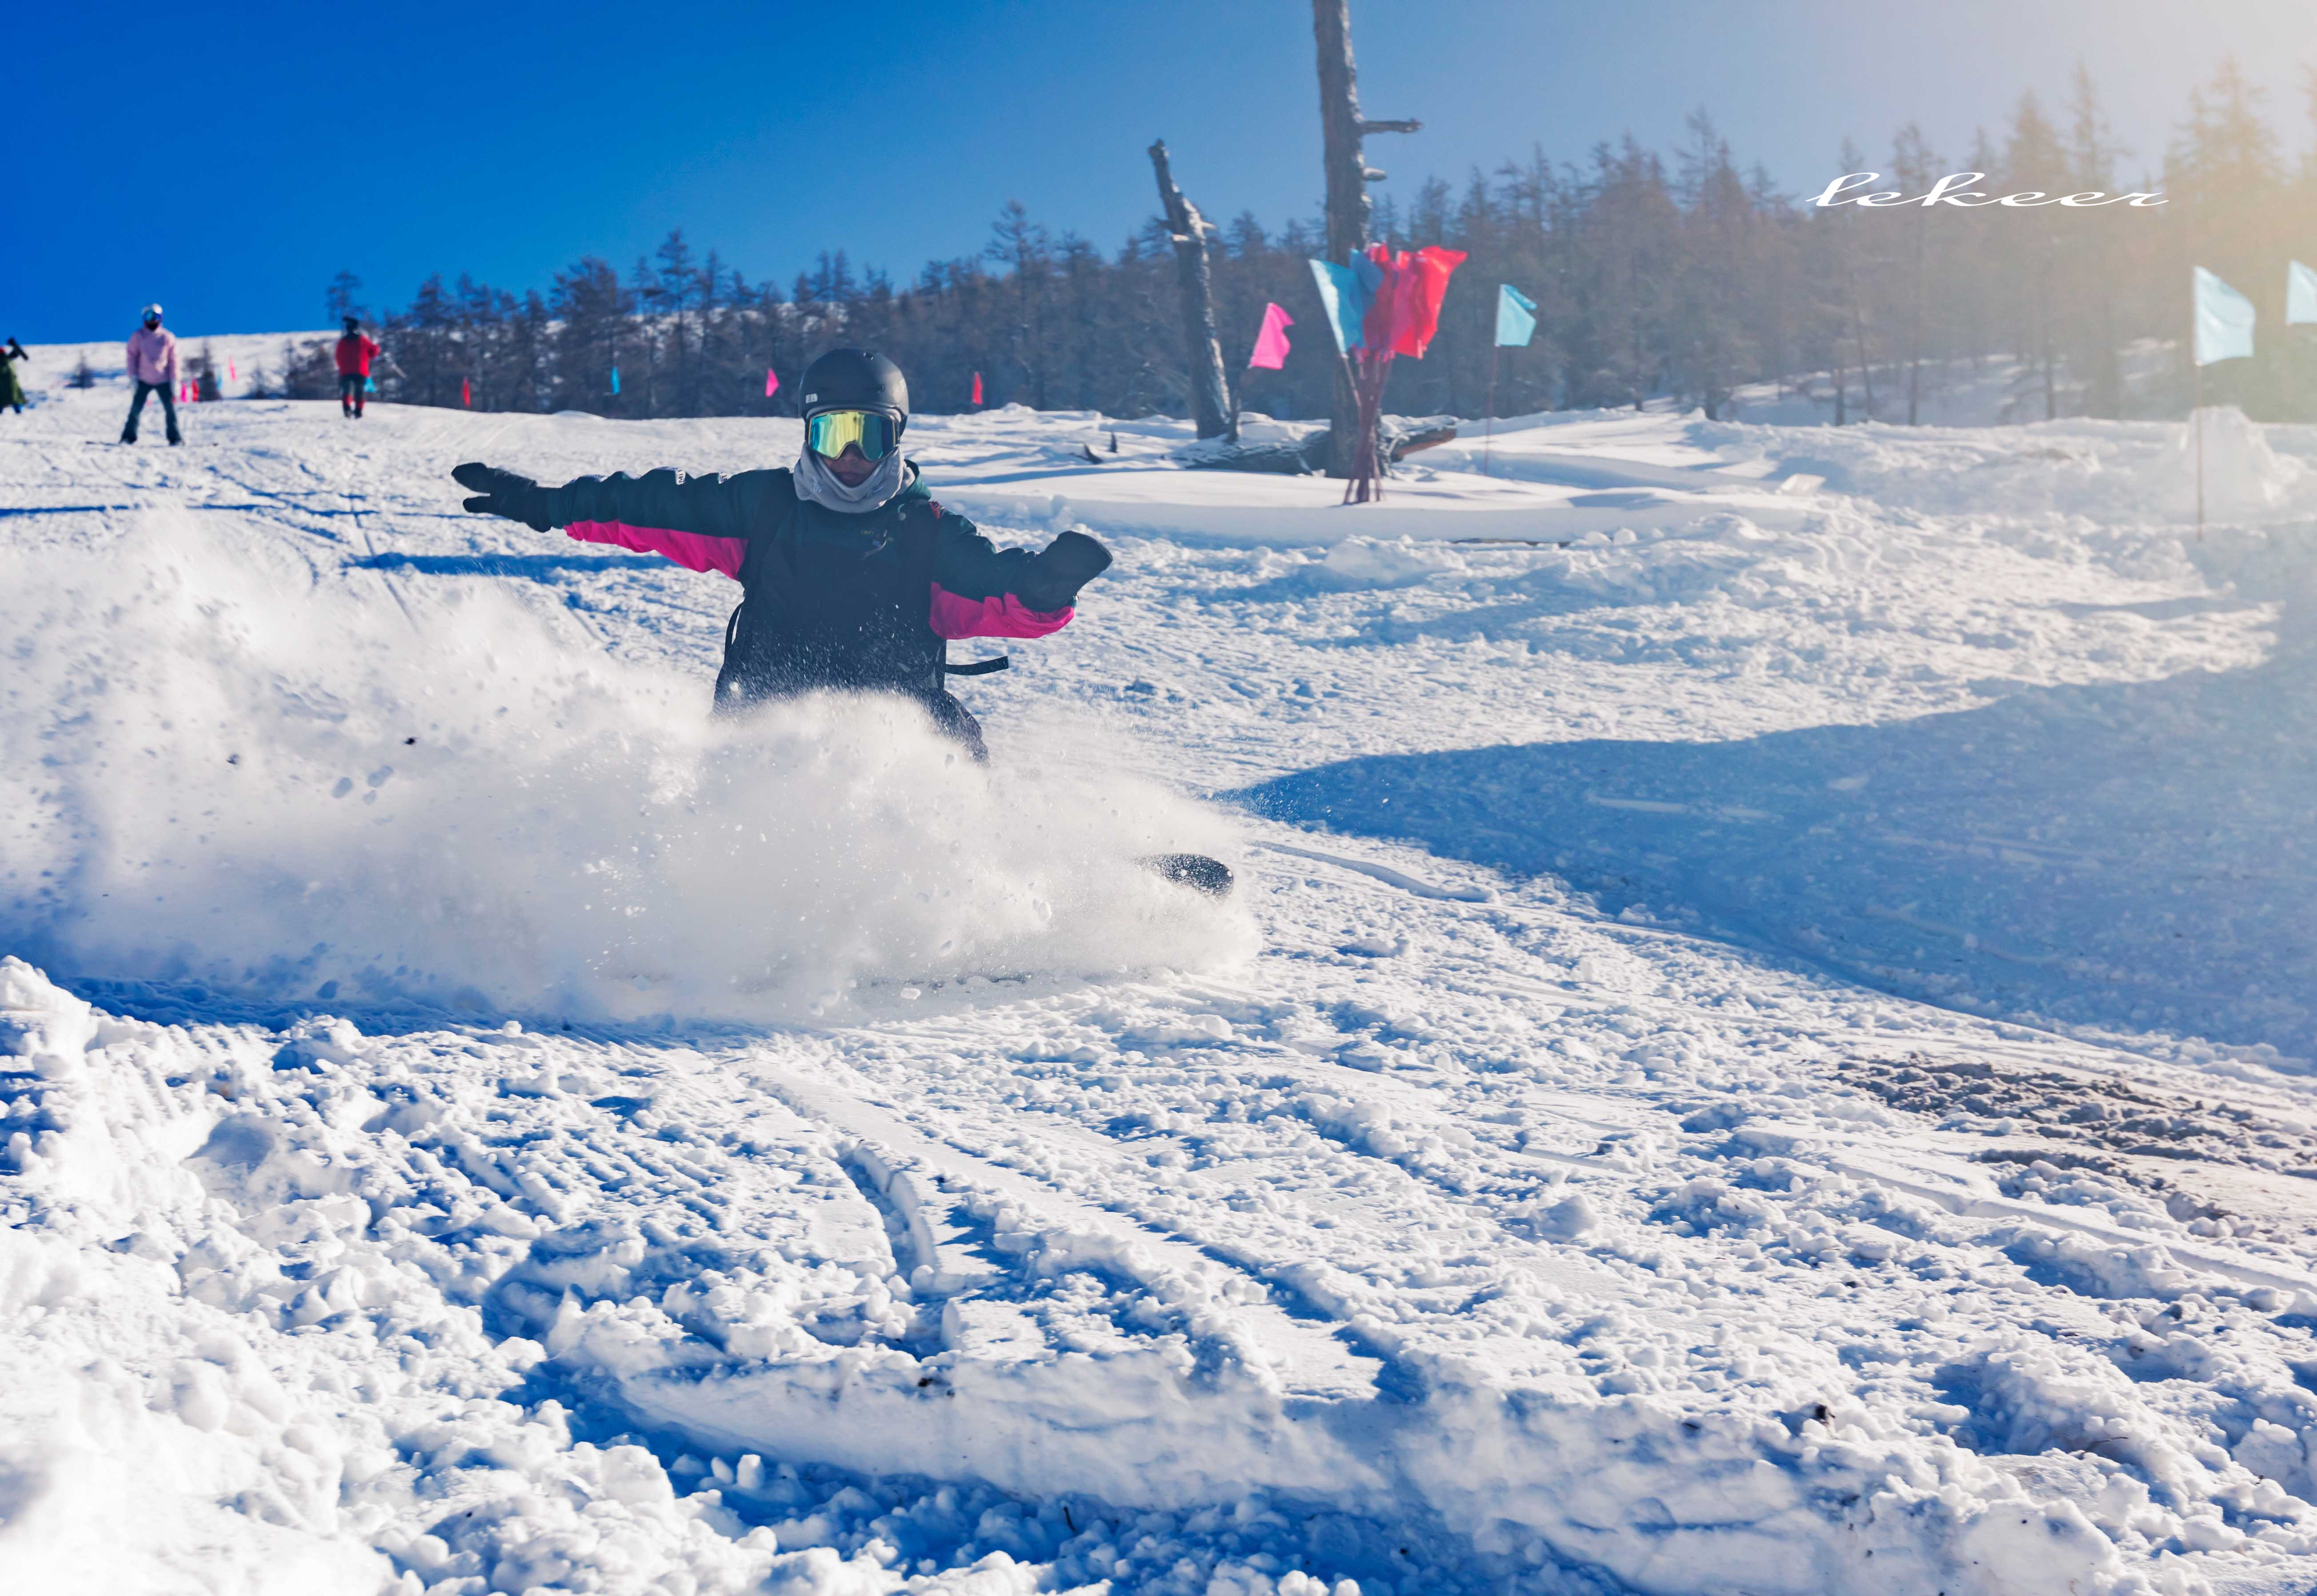 可可托海滑雪场山体垂直落差大,滑行面积大,坡度适宜,适合各类滑雪